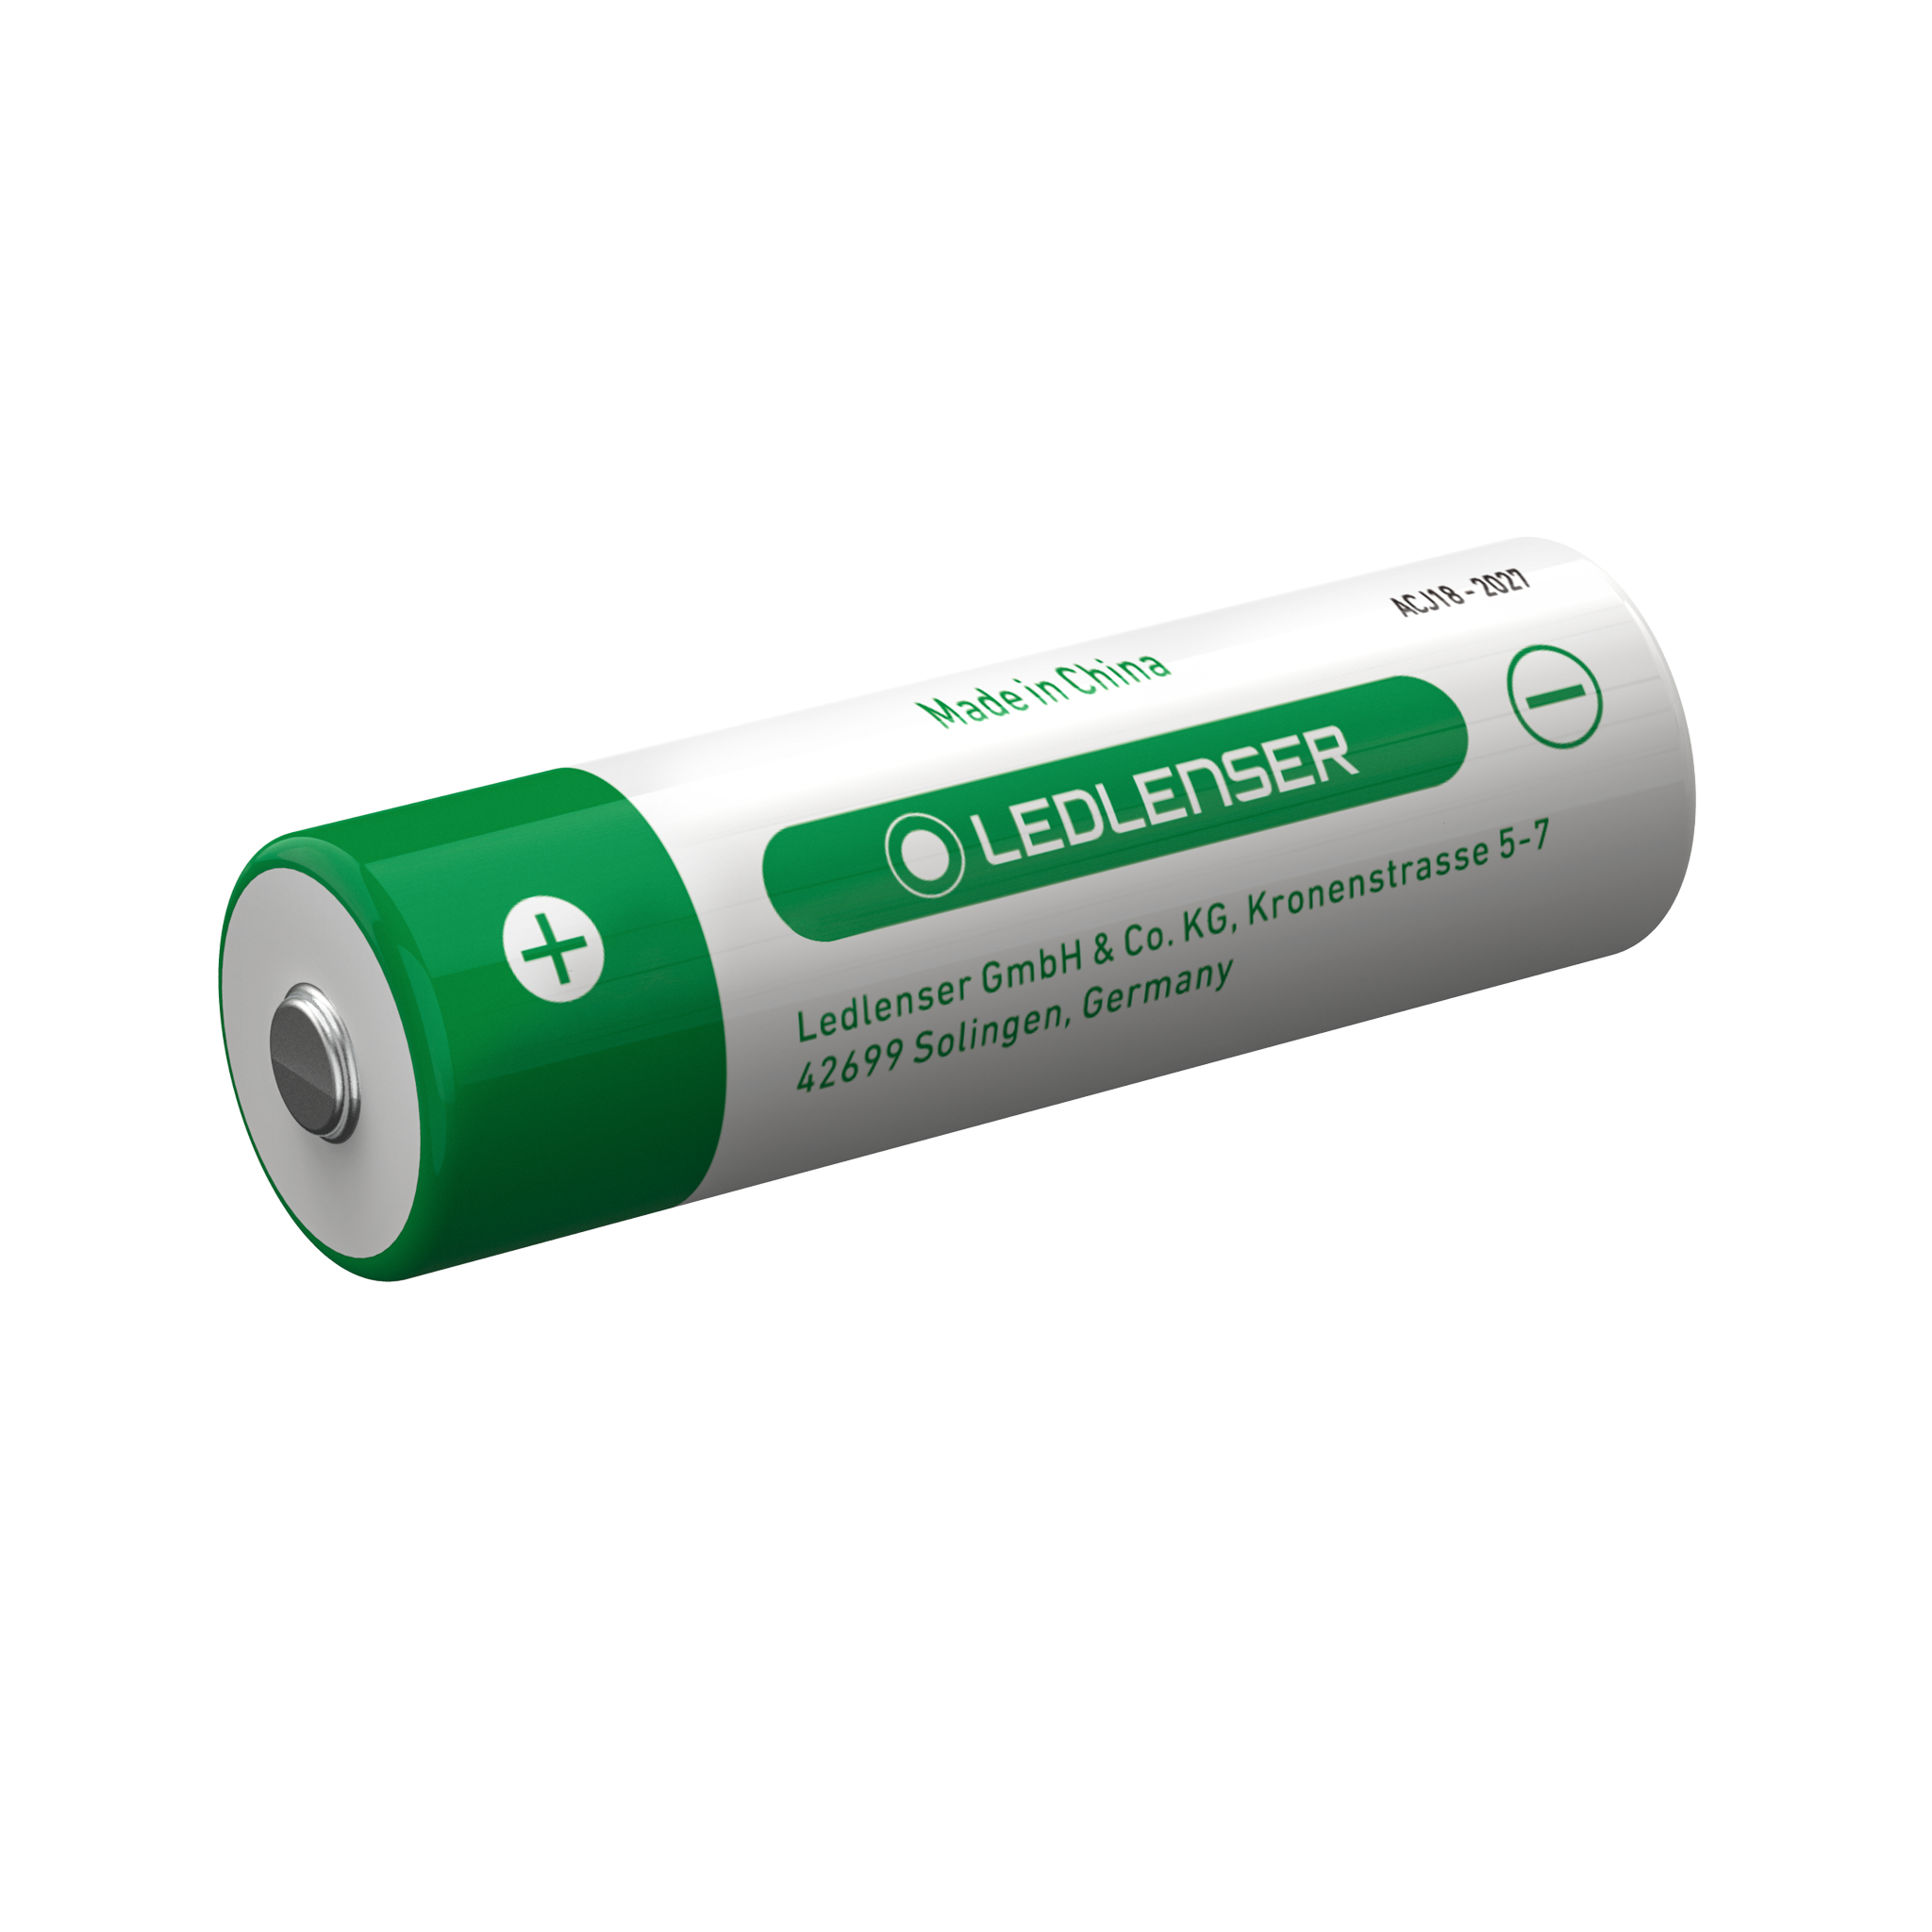 21700 Li-ion Rechargeable Battery | Suits P7R Core, P7R Work, P7R Signature, H7R Core, H7R Work, H7R Signature